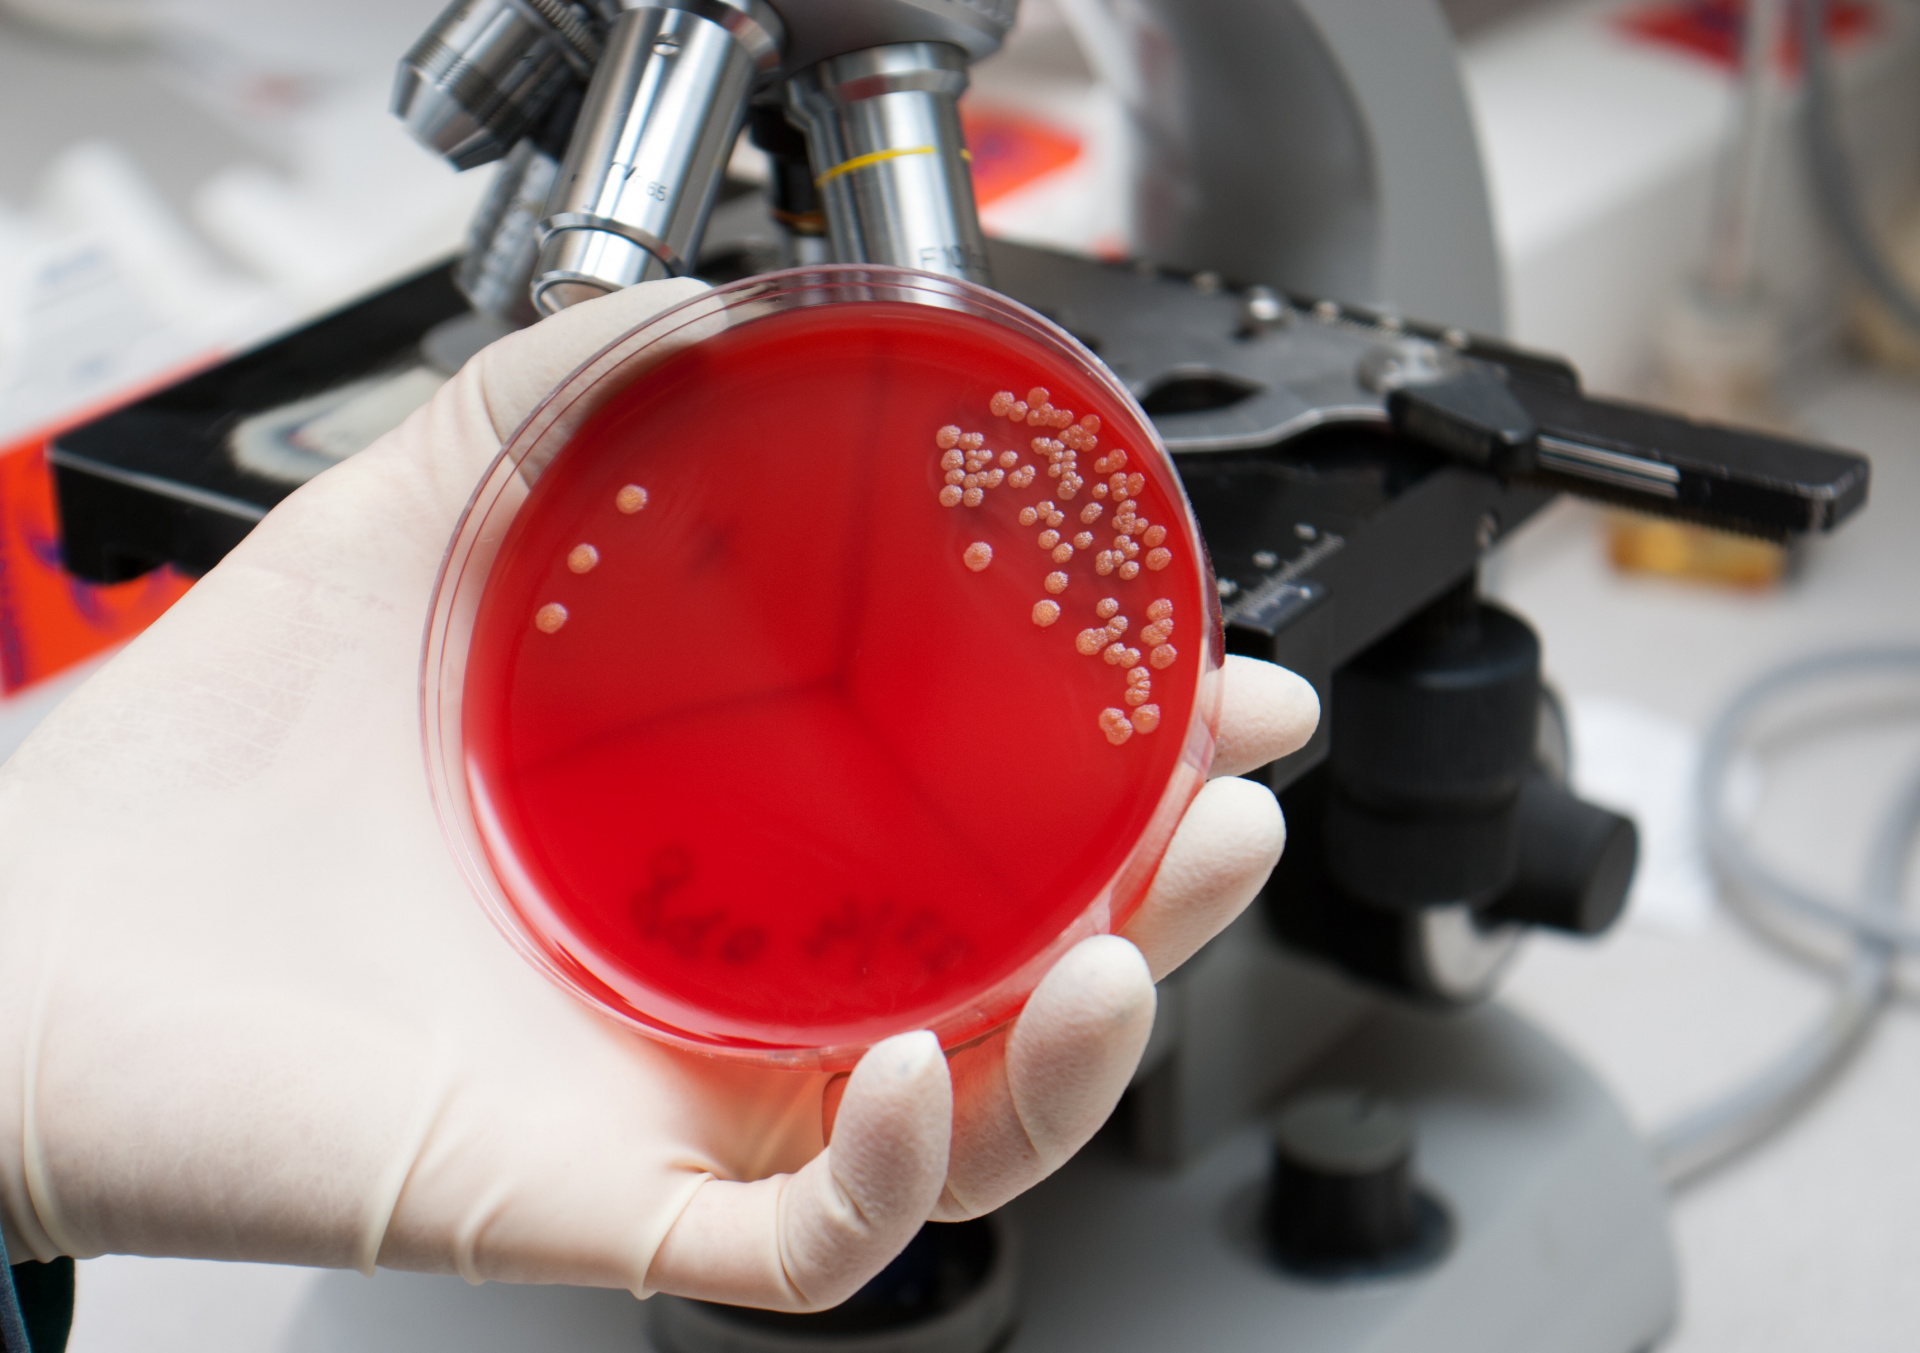 Отдел бактериологии и питательных сред провел более 1100 микробиологических исследований в начале текущего месяца